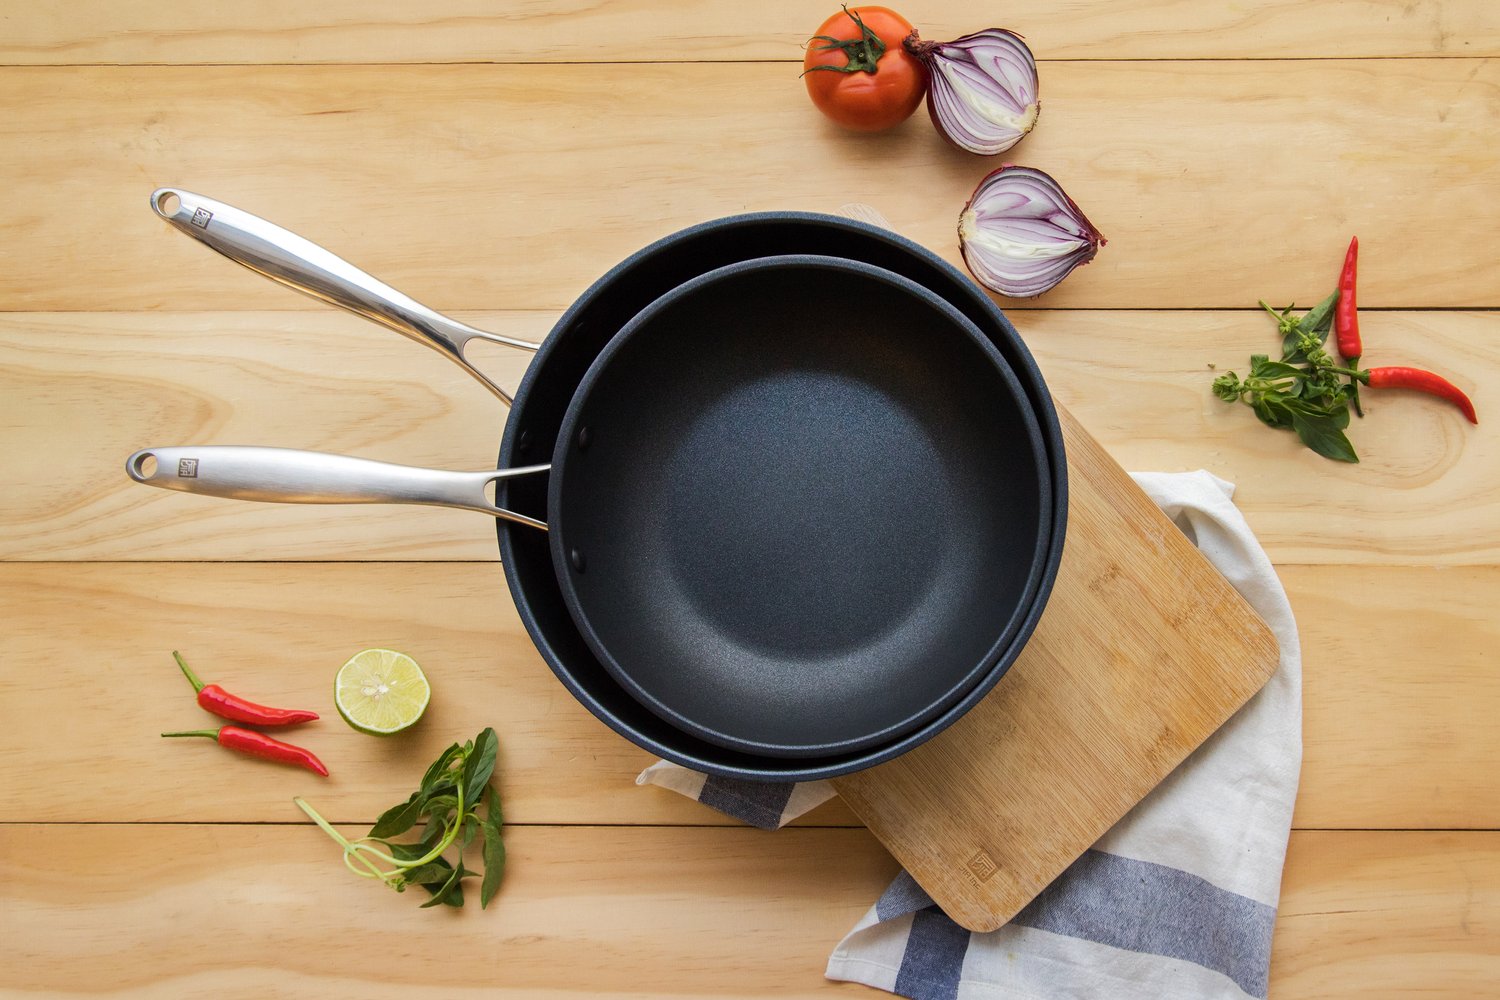 Companion Non-stick Frying Pan — JIA 品家 (EN)